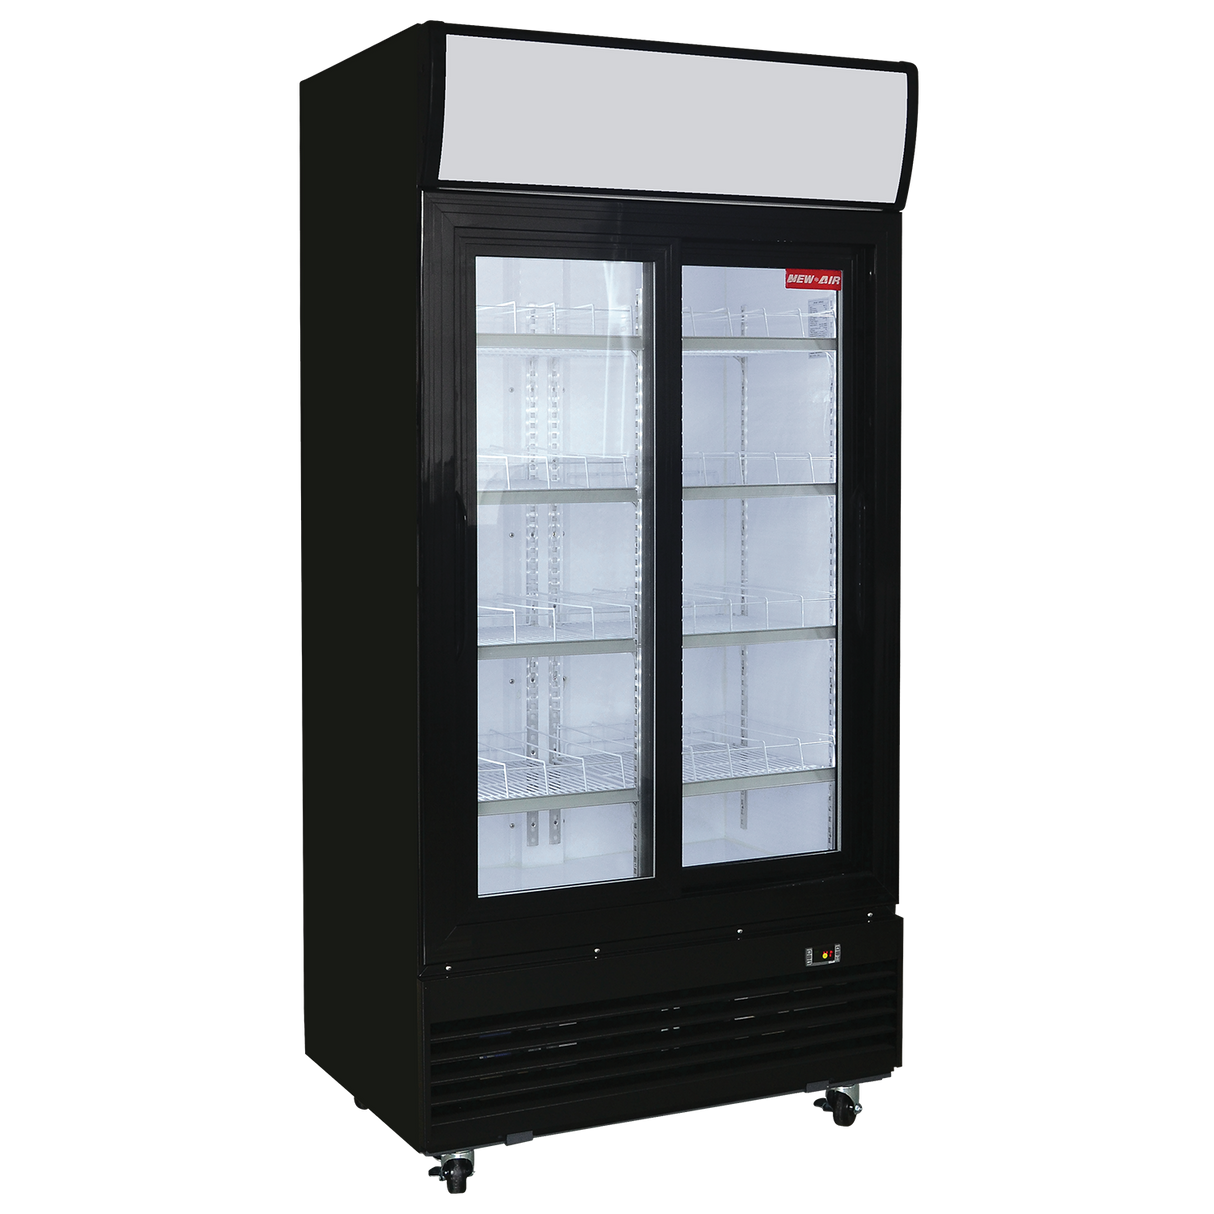 Réfrigérateur New Air NGR-40-S 28 p3 - 2 Portes